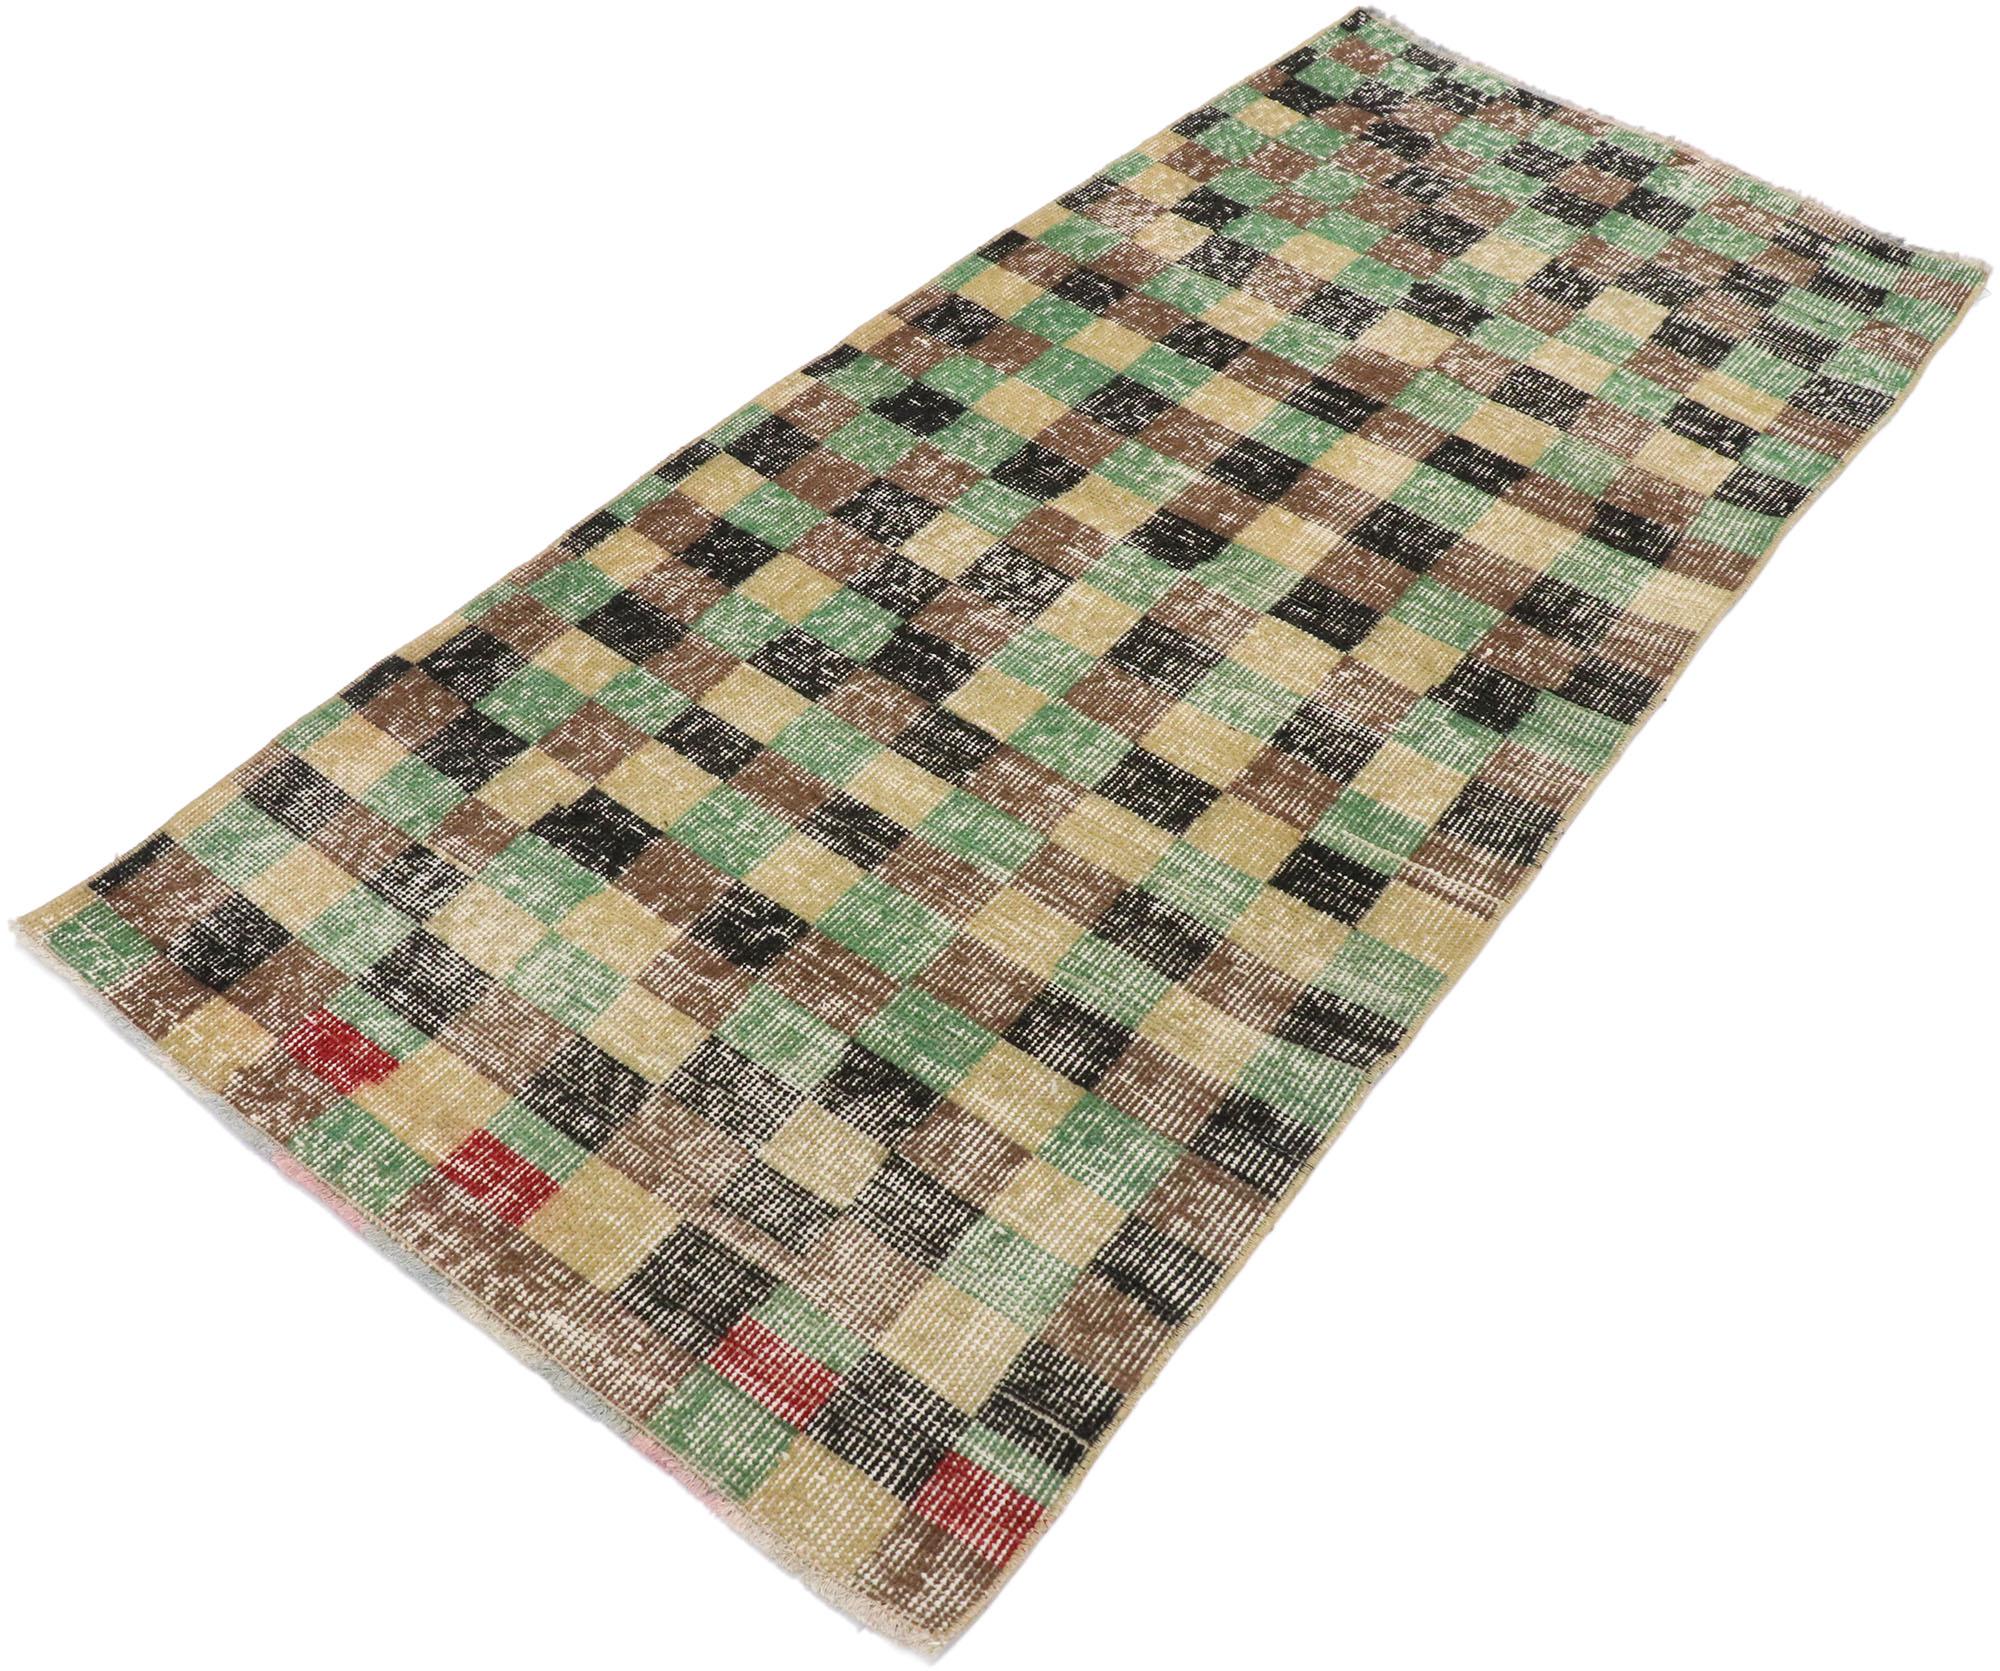 53286 Tapis vintage turc Sivas avec un style cubiste rustique. Ce tapis turc vintage Sivas en laine nouée à la main présente un motif en damier sur toute la surface, composé de carrés alternés verts, bruns, noirs, jaunes et rouges. De légères vagues